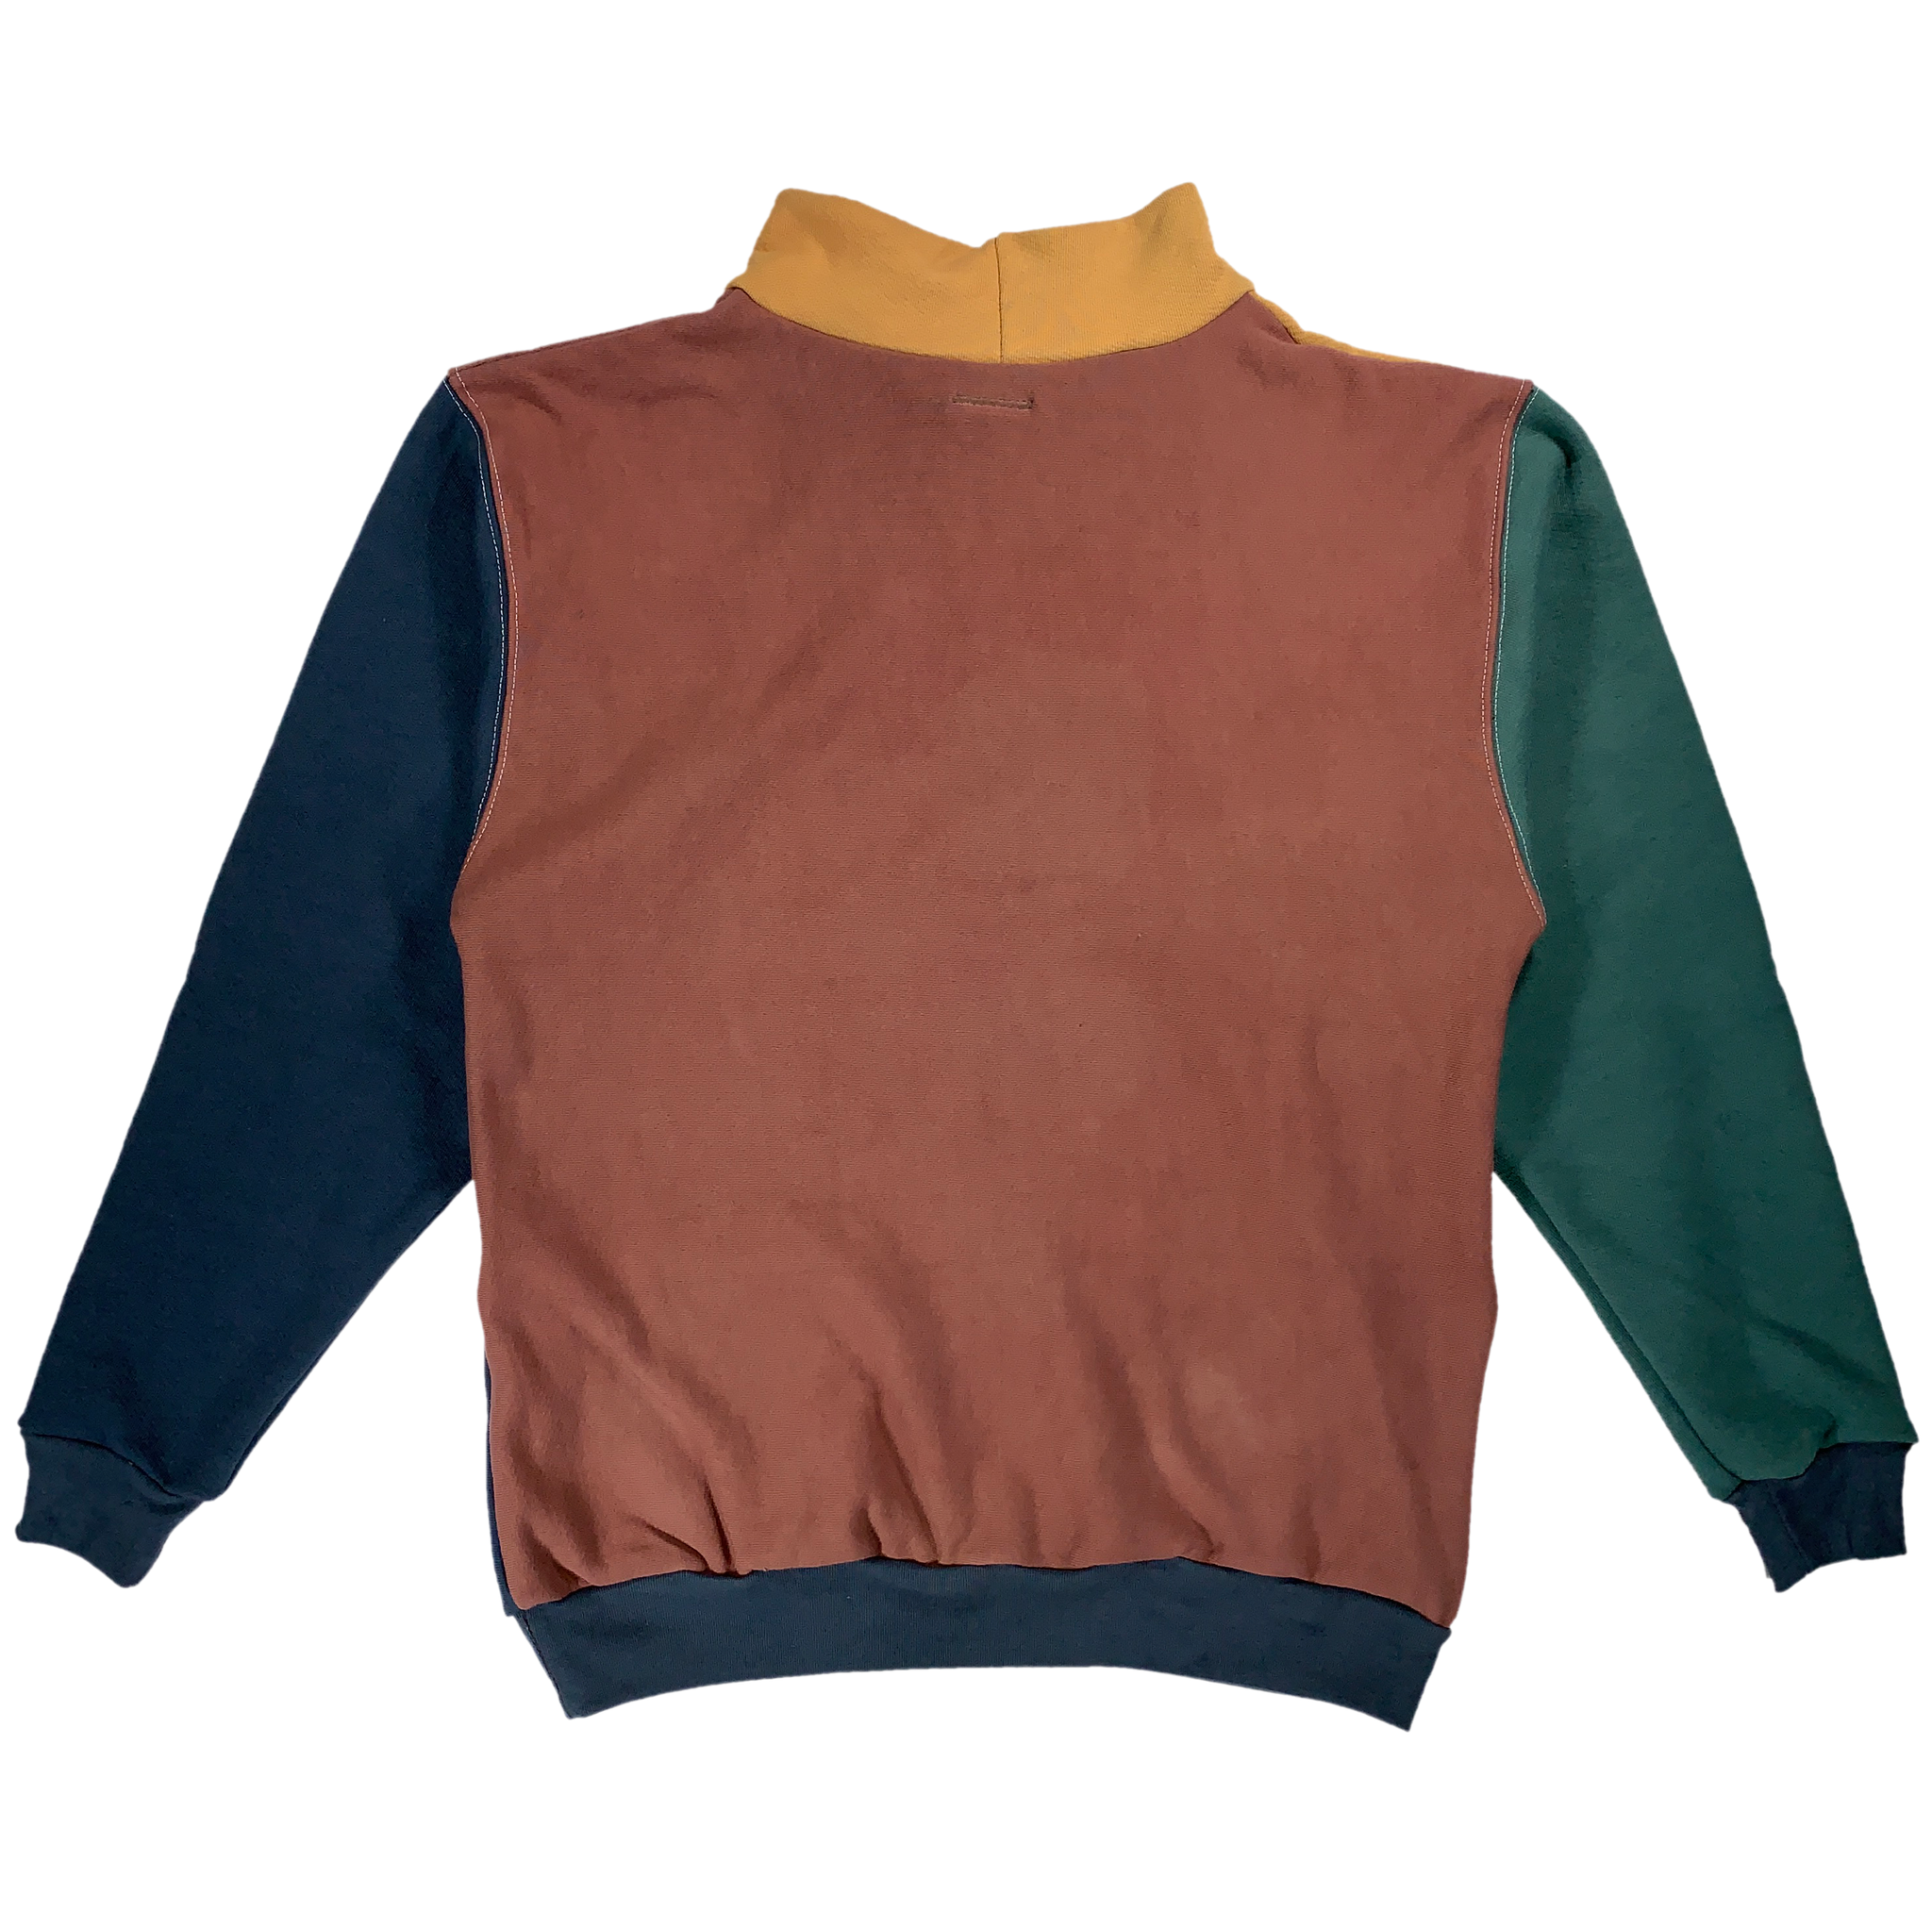 Handmade Sweater - M